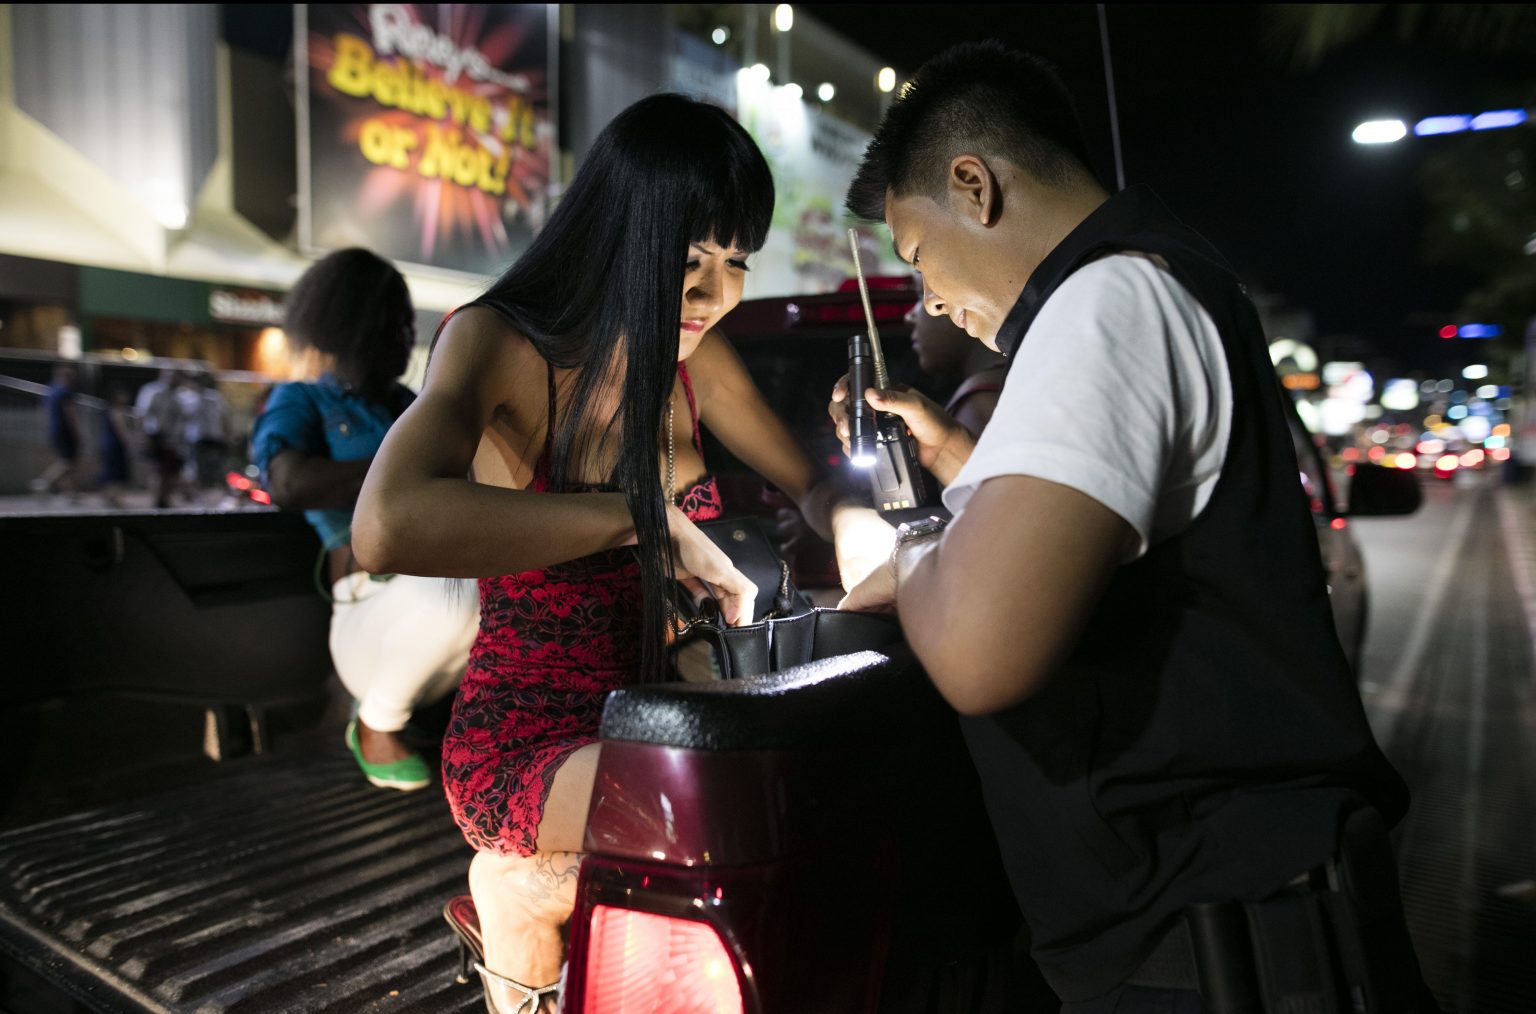 Уличный Секс В Китае